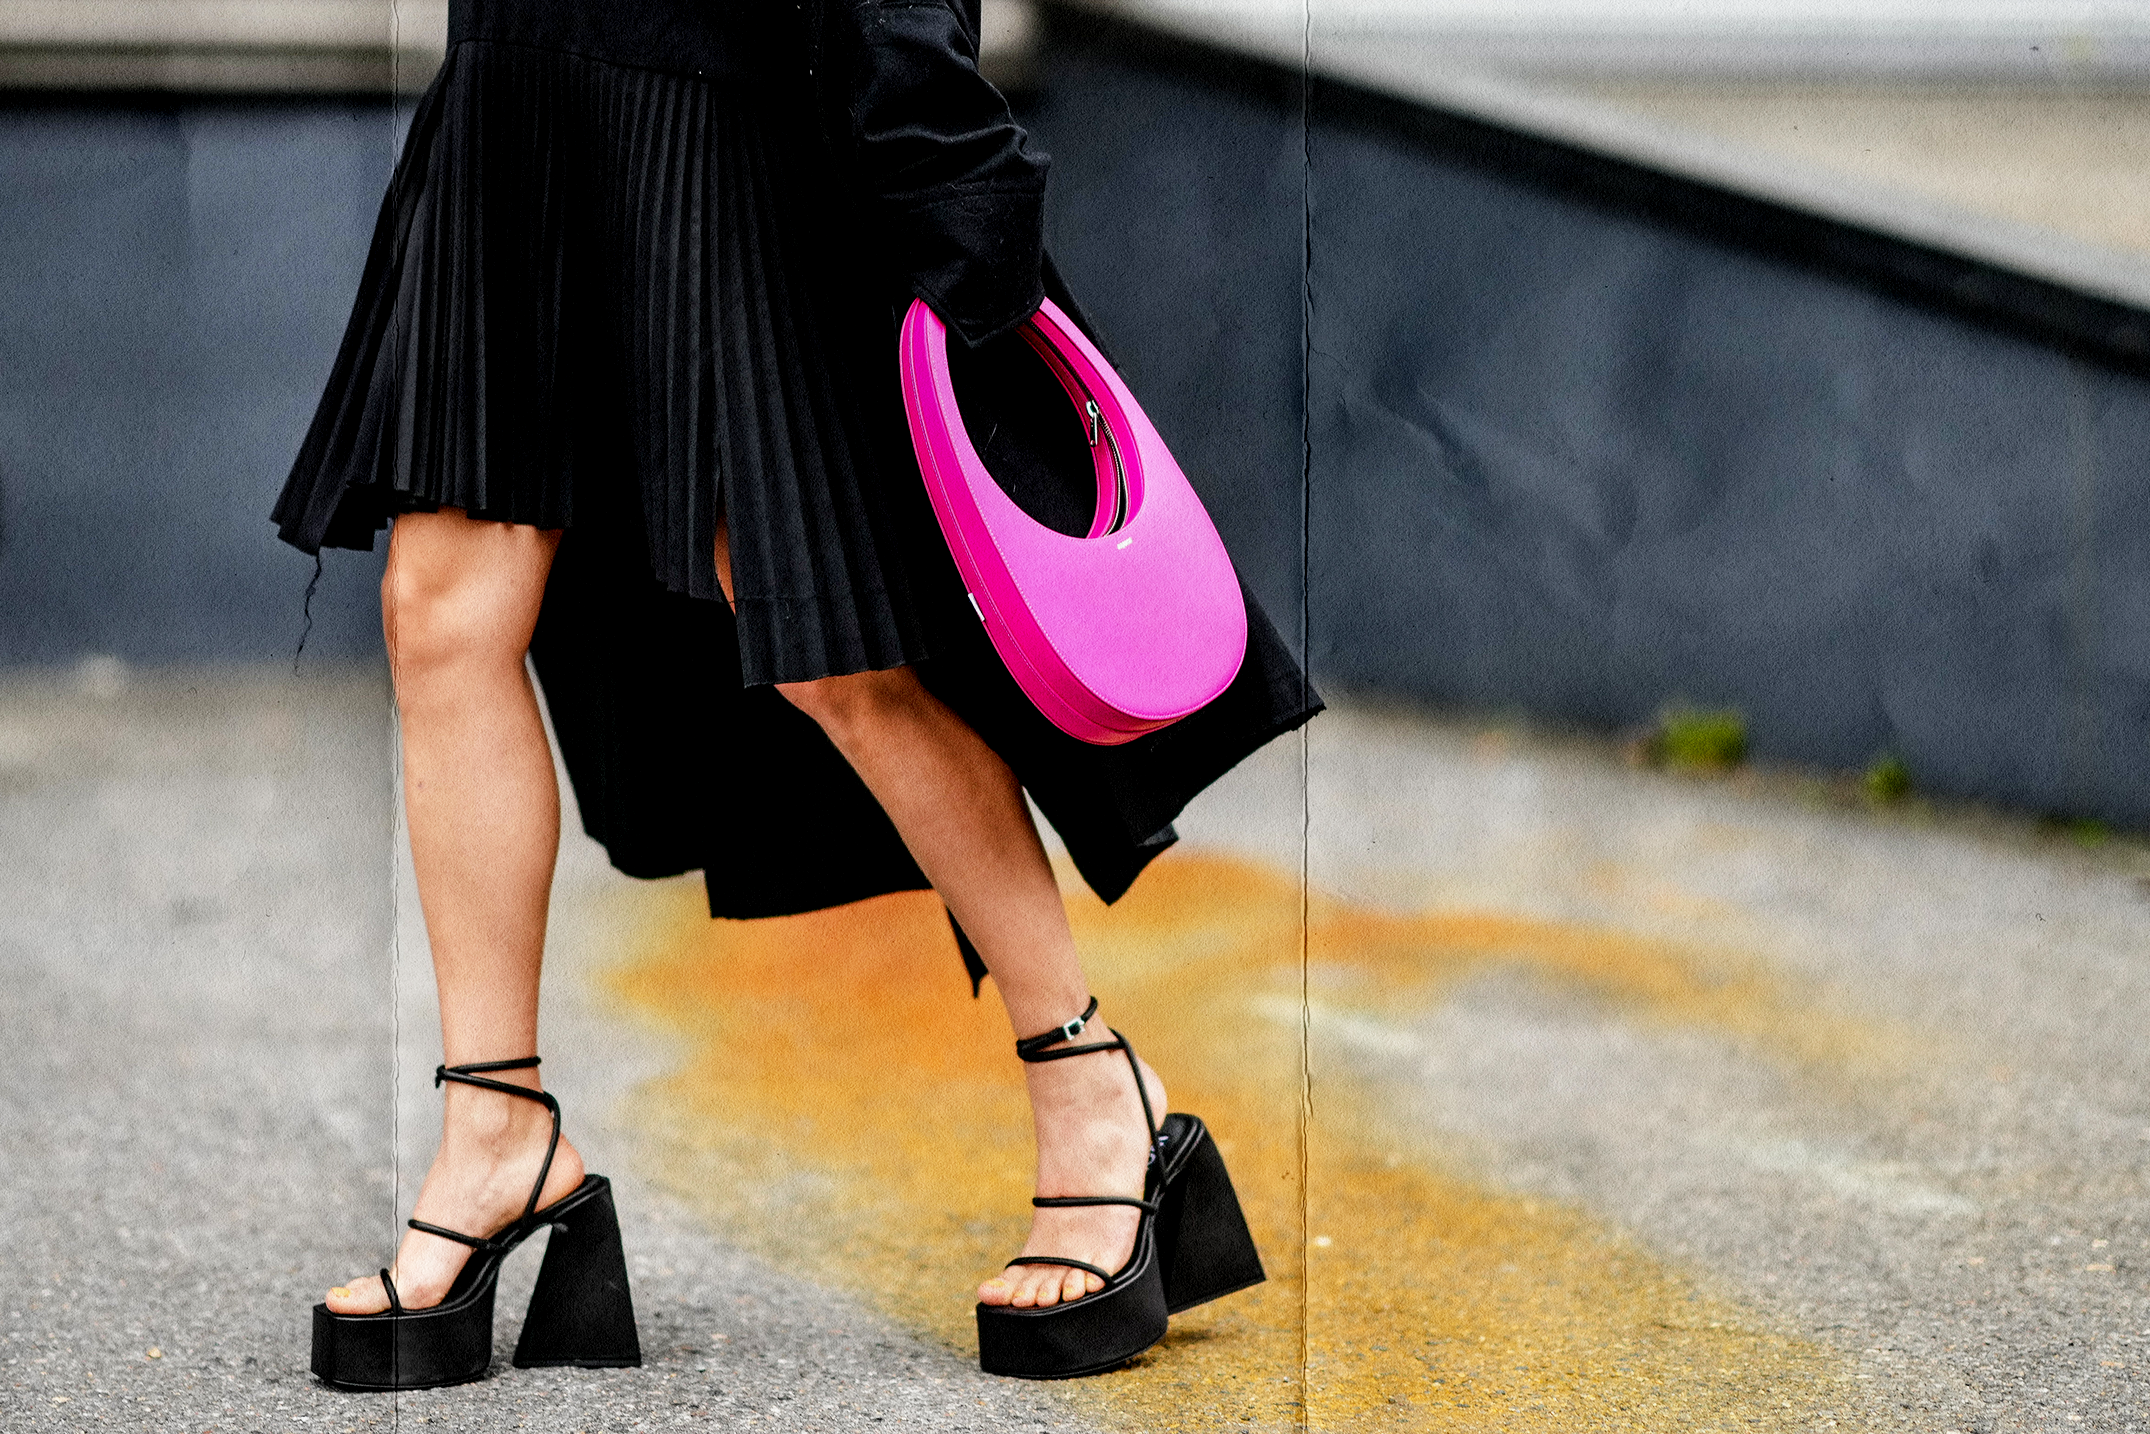 Autre ENPLEI Women Sandals 16cm Ultra high heels Summer Platform Pumps  Party Club shoes Woman Sequined Gladiator Sandals（#Black） à prix pas cher |  Jumia Maroc